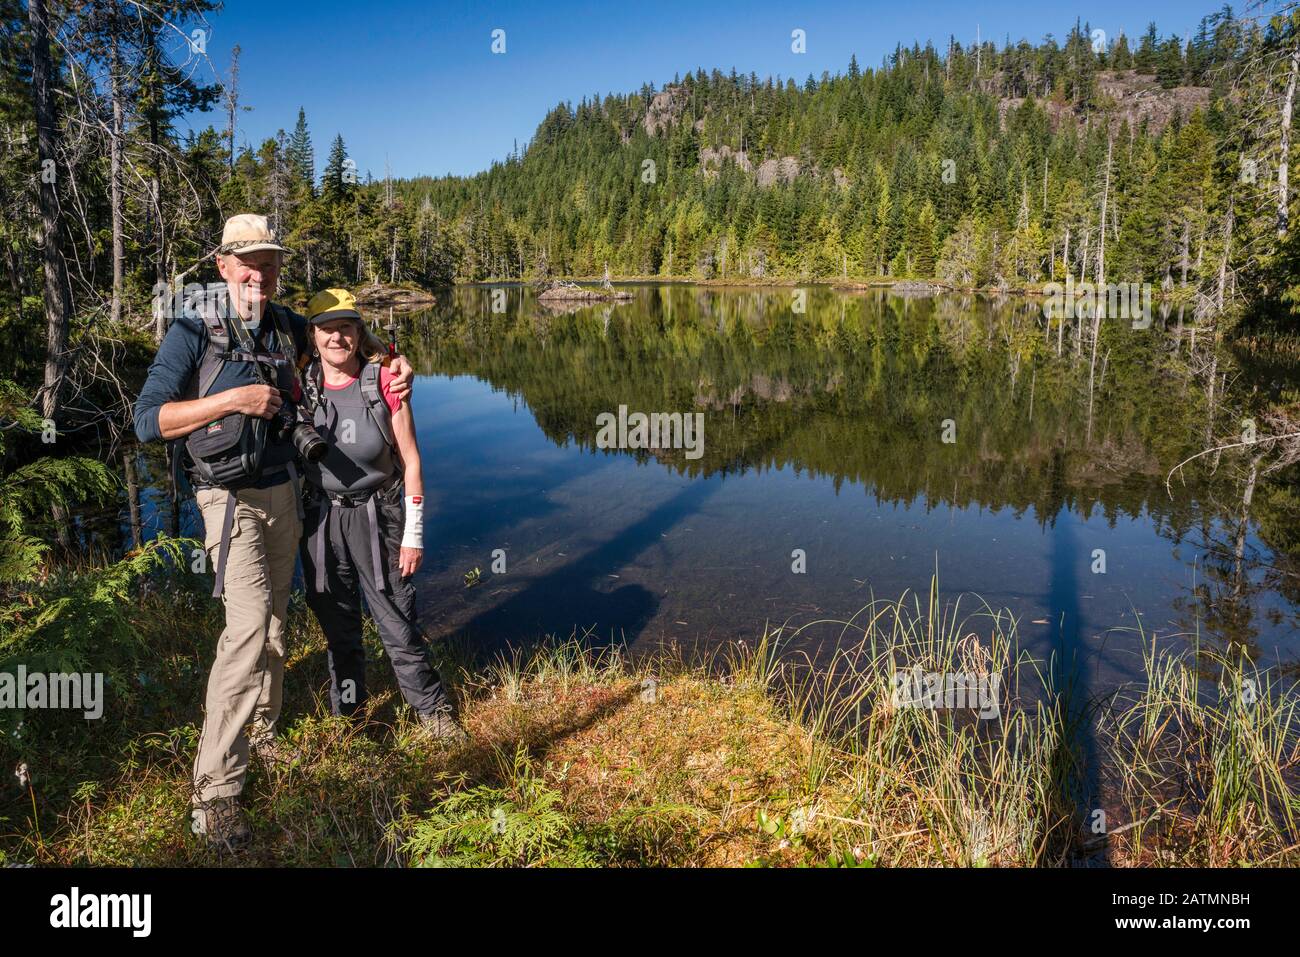 Escursionisti senior presso Il Lago Little Nugedzi nella foresta pluviale temperata, Quadra Island, British Columbia, Canada Foto Stock